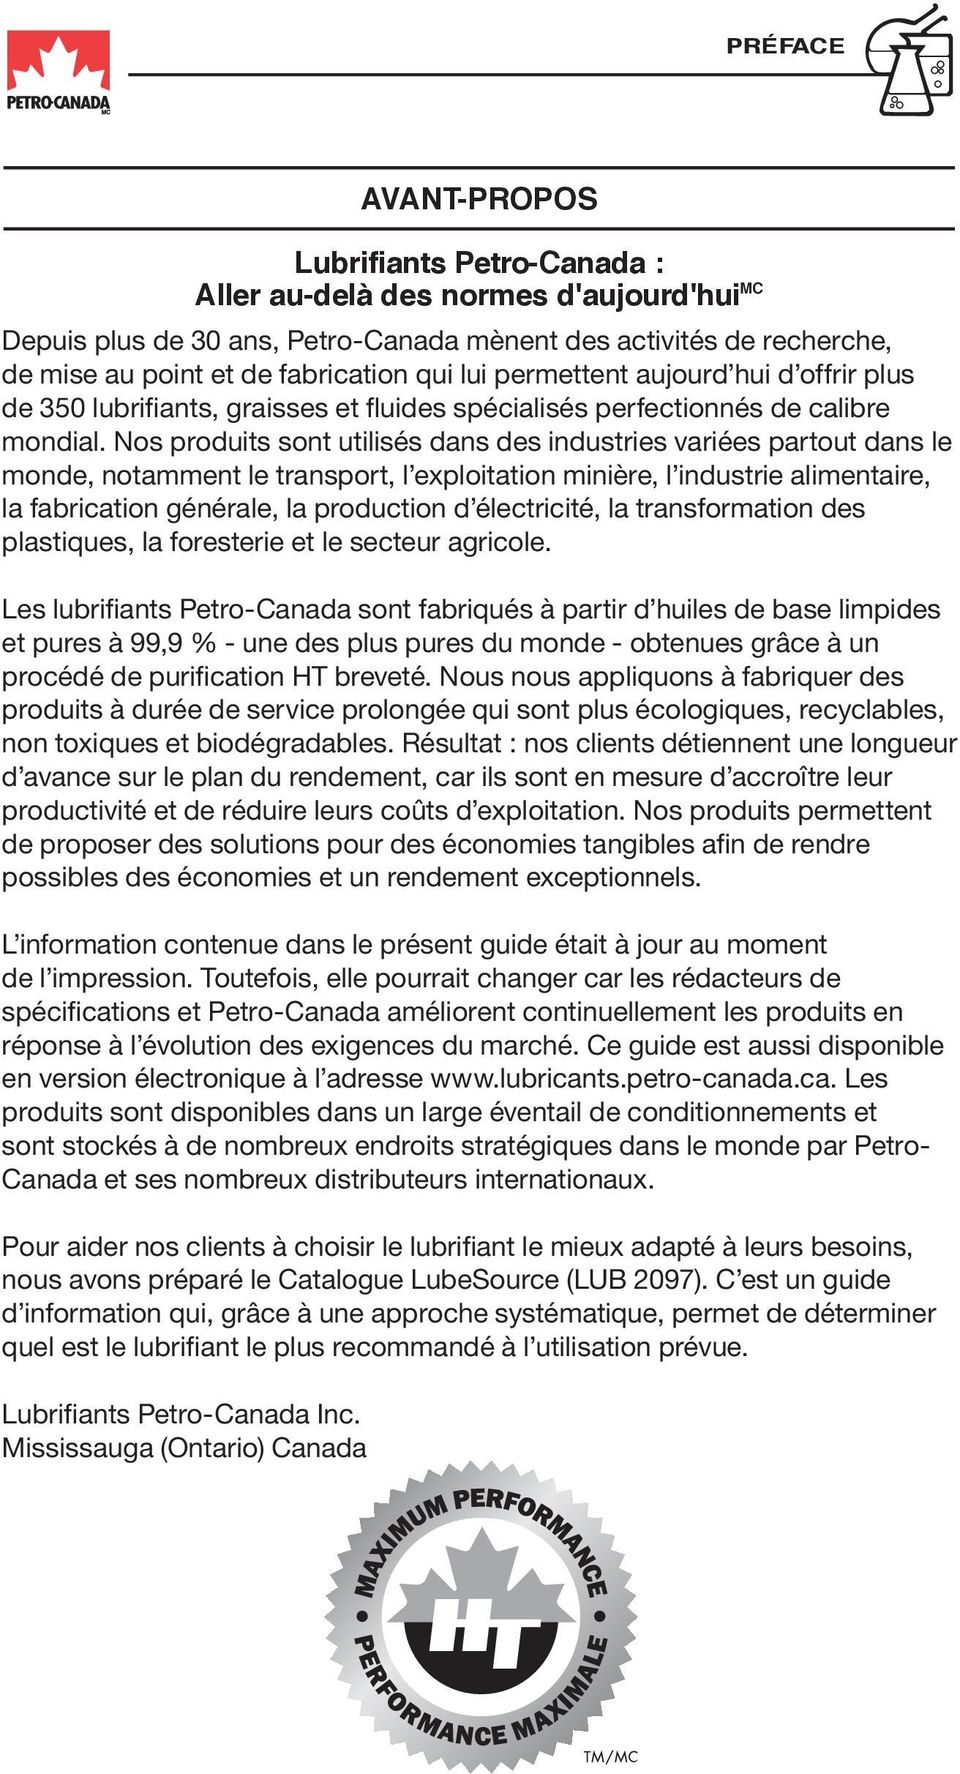 Graisse lourde pour tige de forage VULTREX Petro-Canada